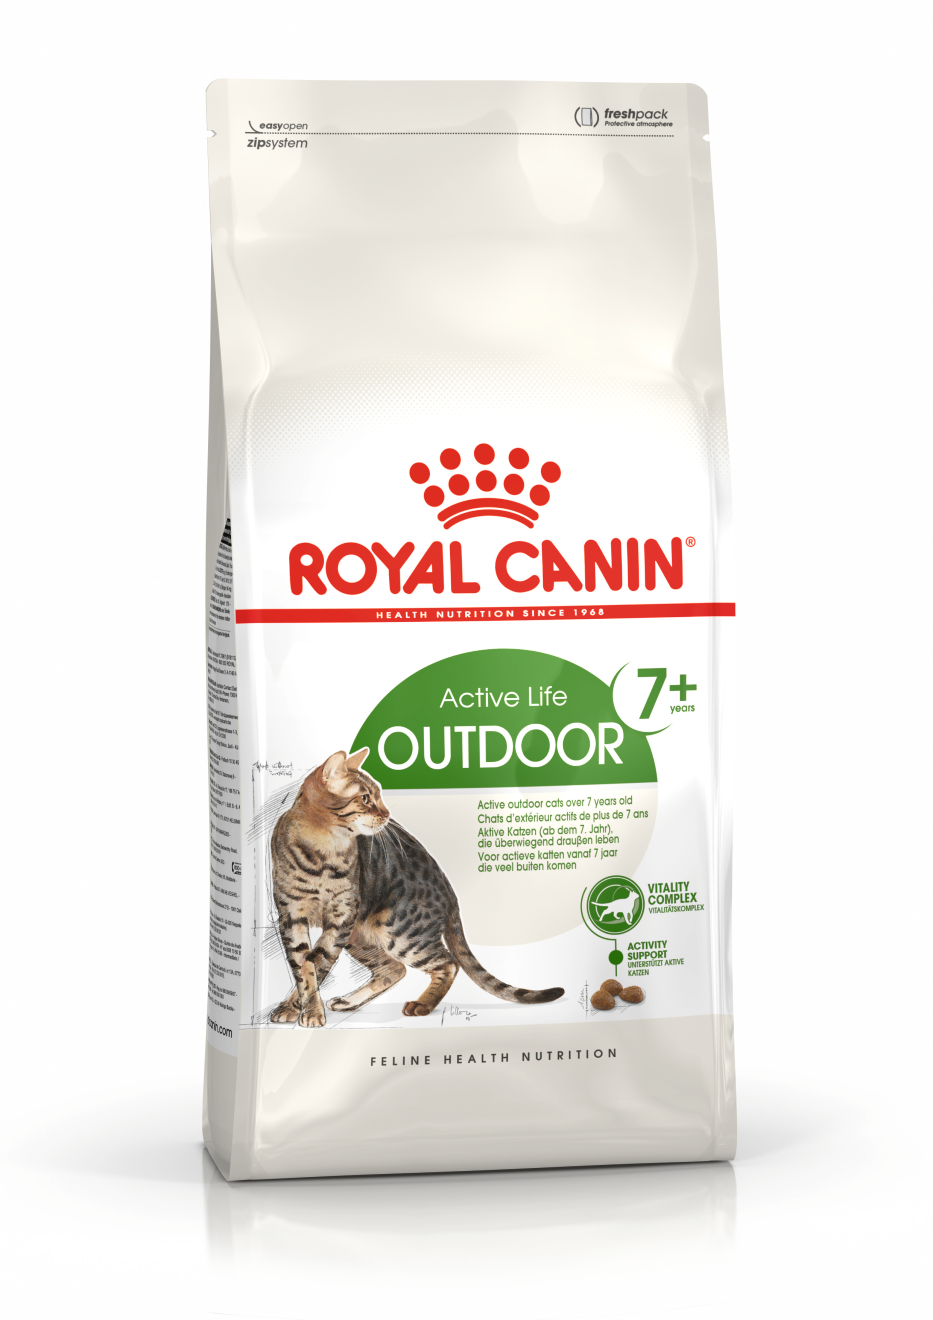 ROYAL CANIN® Outdoor 7+ voor oudere katten (7-12 jaar)voor actieve katten die veel buiten komen 2kg